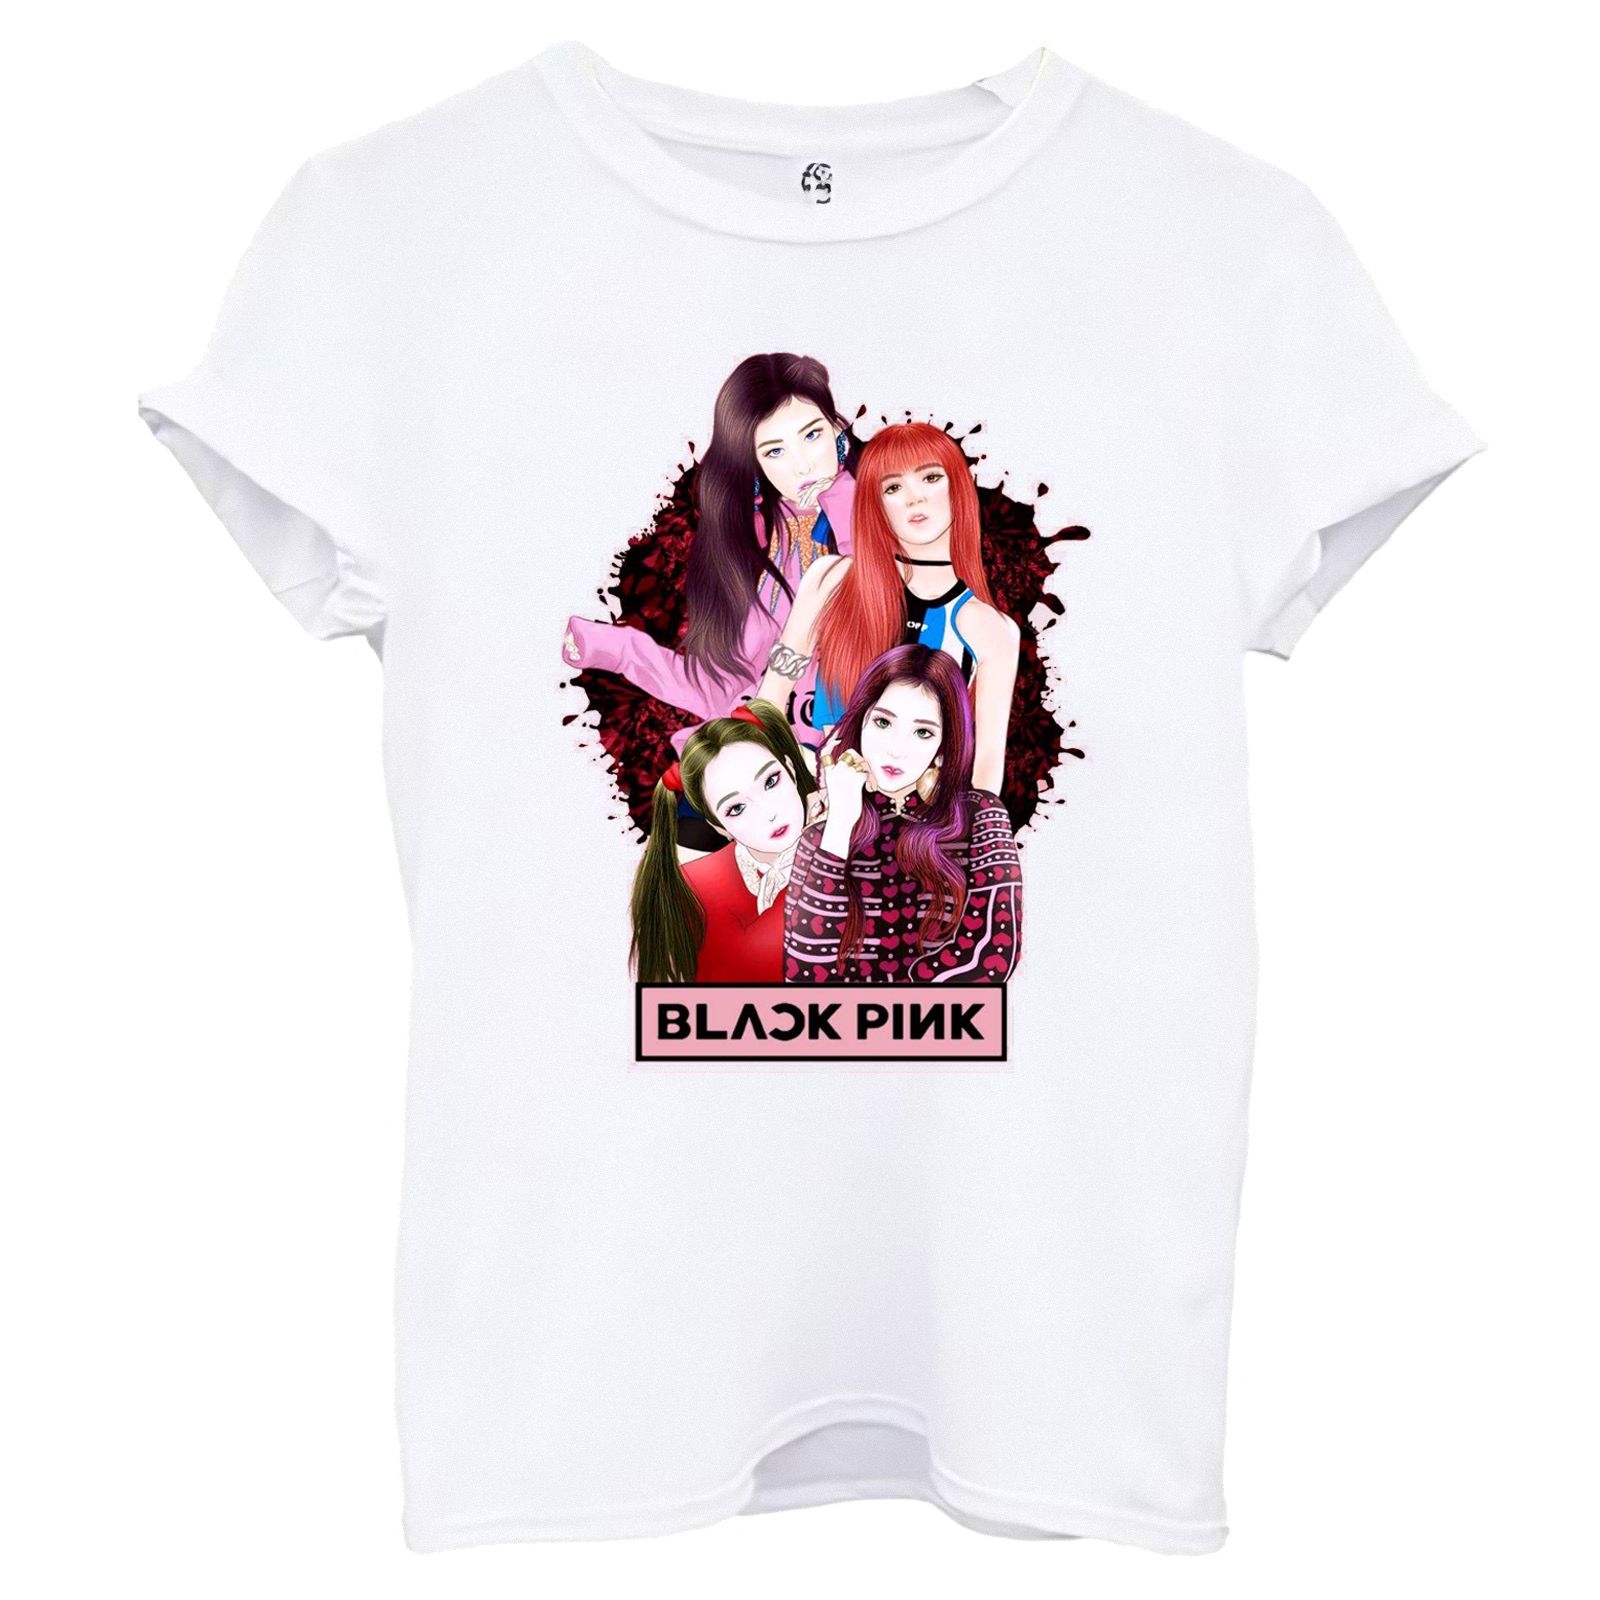 تی شرت آستین کوتاه زنانه اسد طرح BLACK PINK کد 92 -  - 2